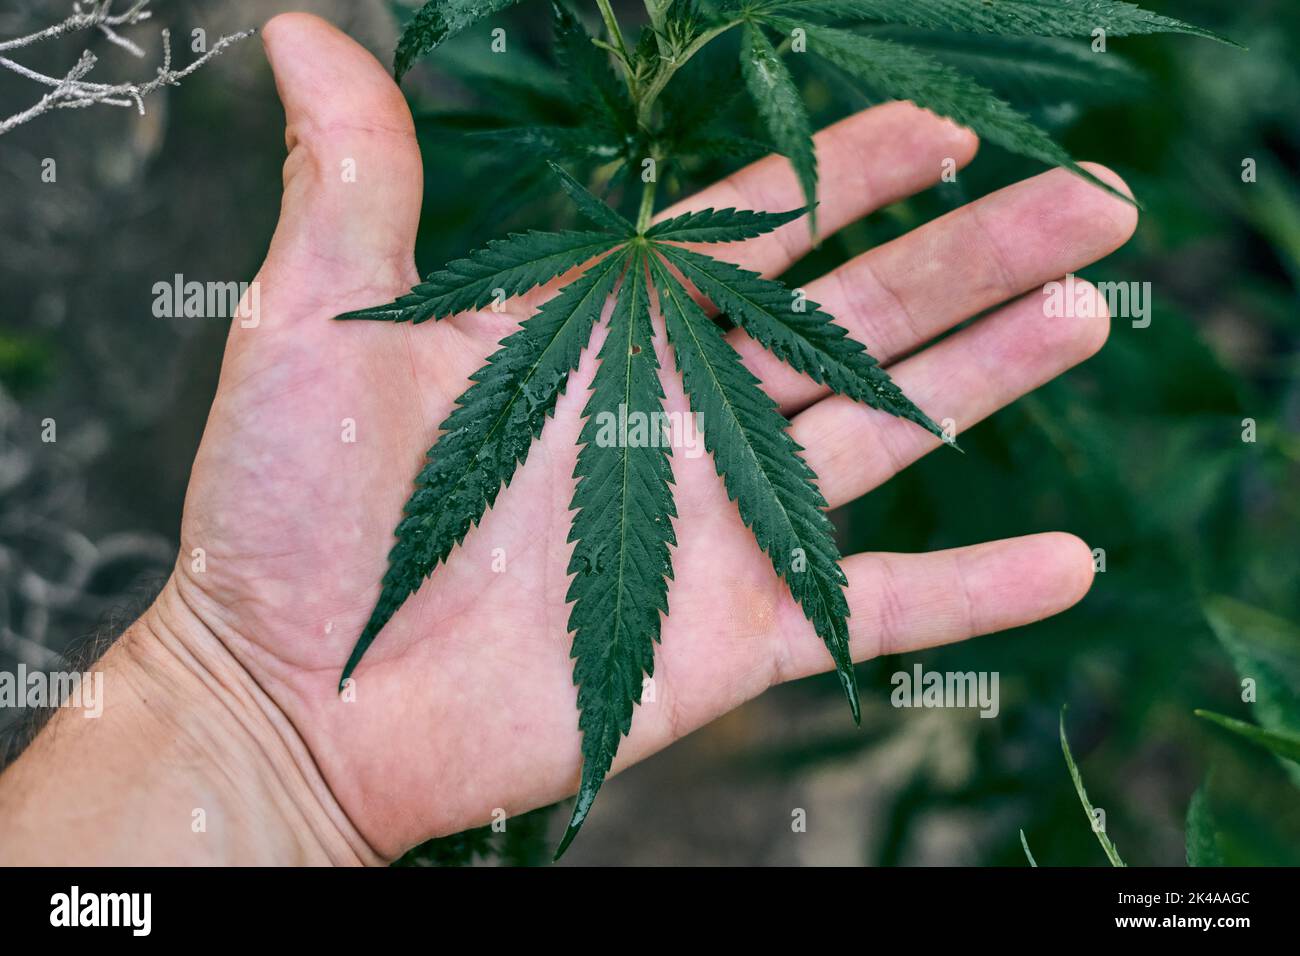 Große Cannabispflanze, die von der Hand einer Person gehalten wird Stockfoto